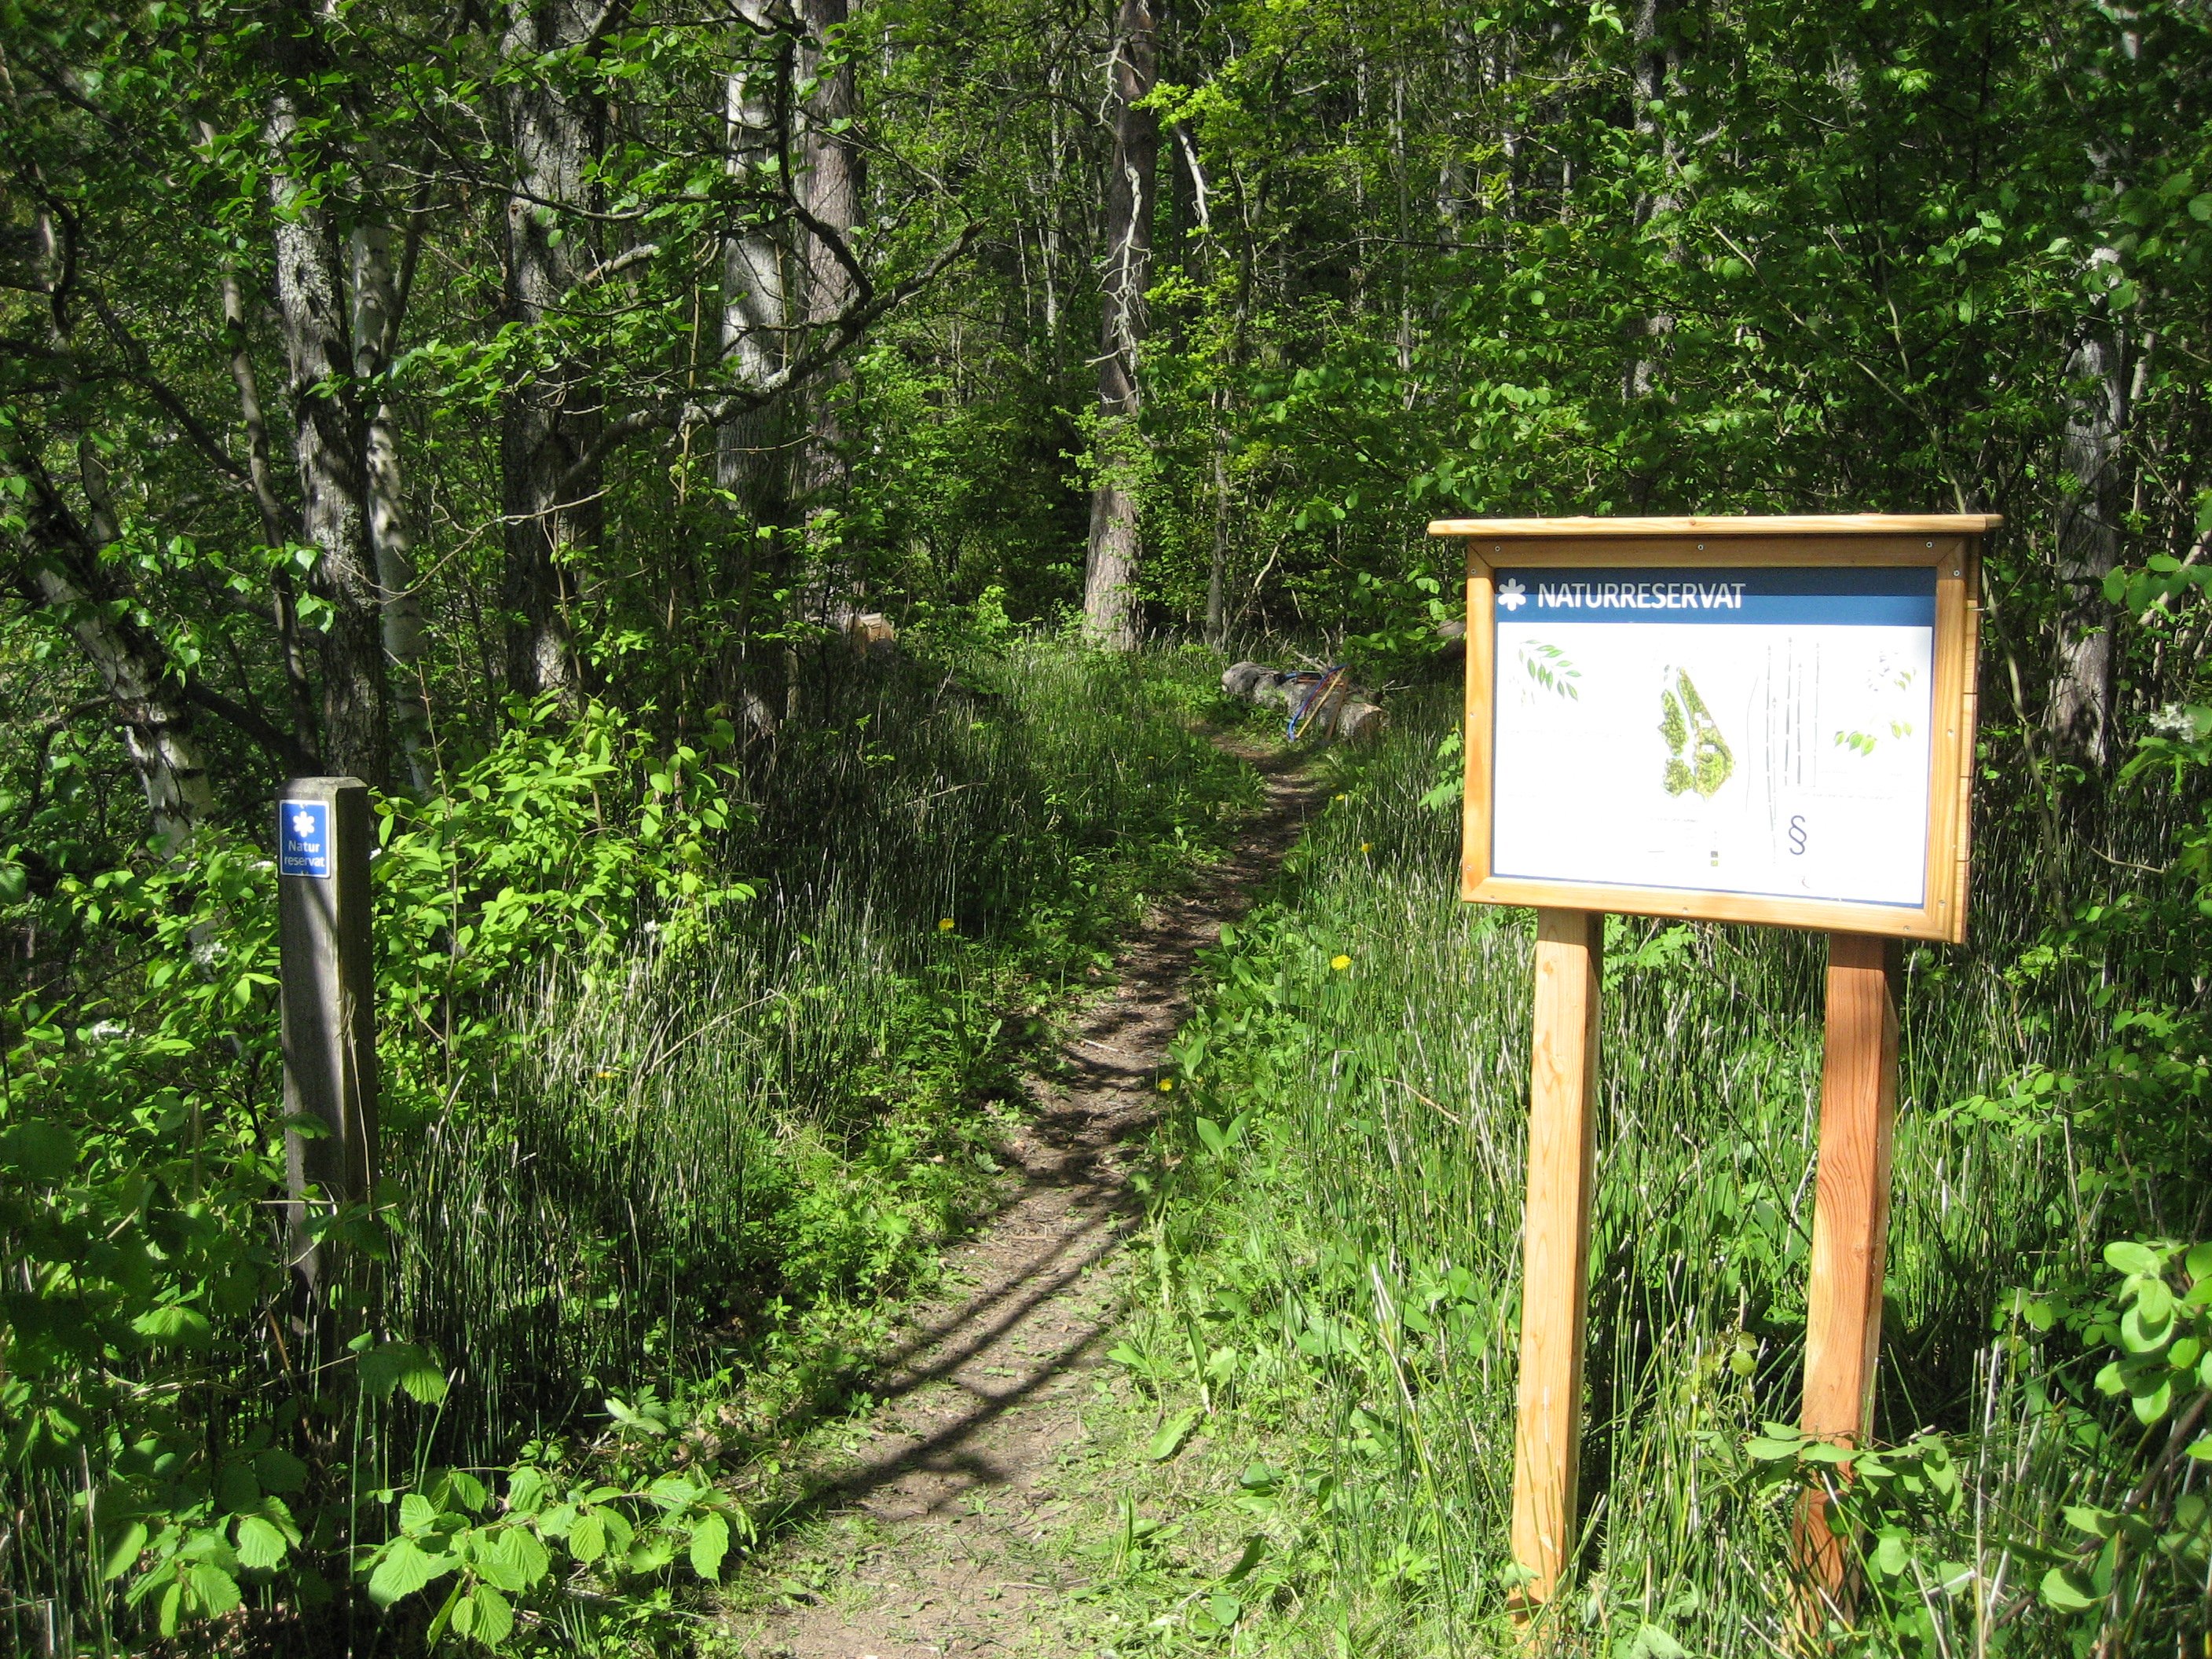 Vid en smal skogsstig står en informationsskylt och en stigmarkerning med skylten "Naturreservat". Det är tät skog på båda sidorna av stigen.